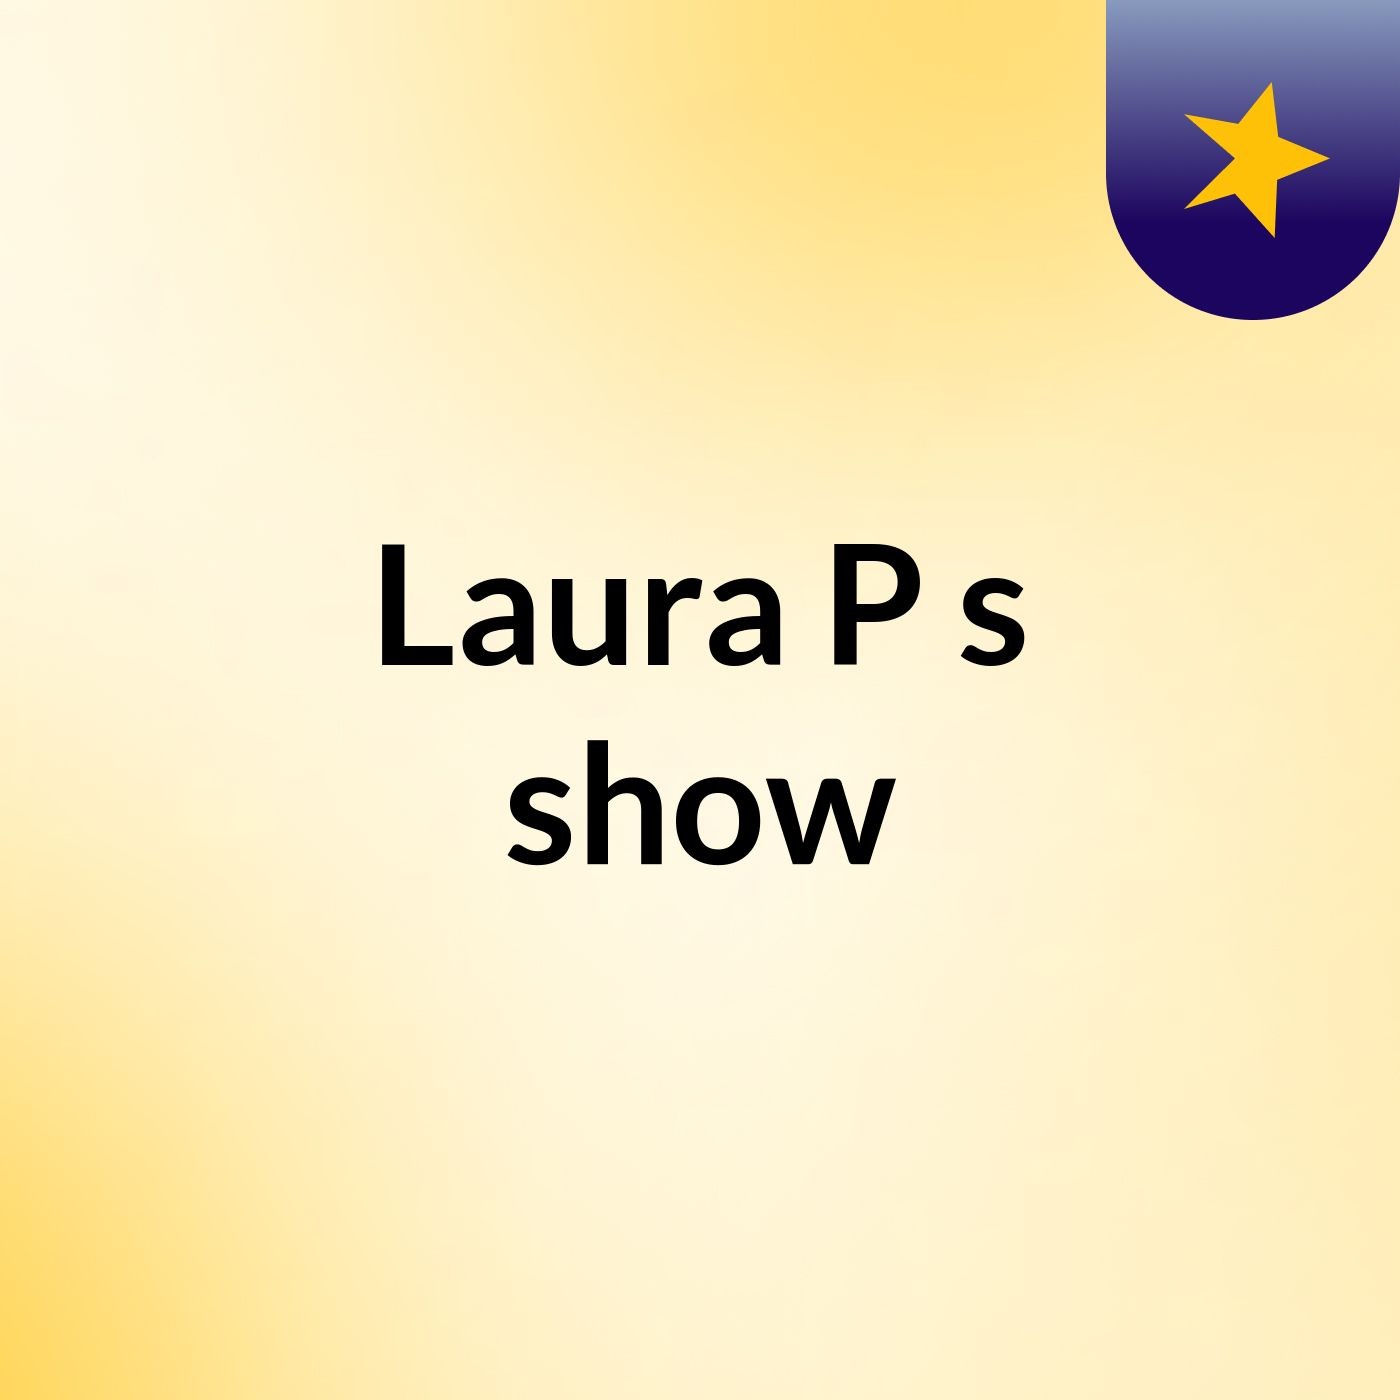 Laura P's show